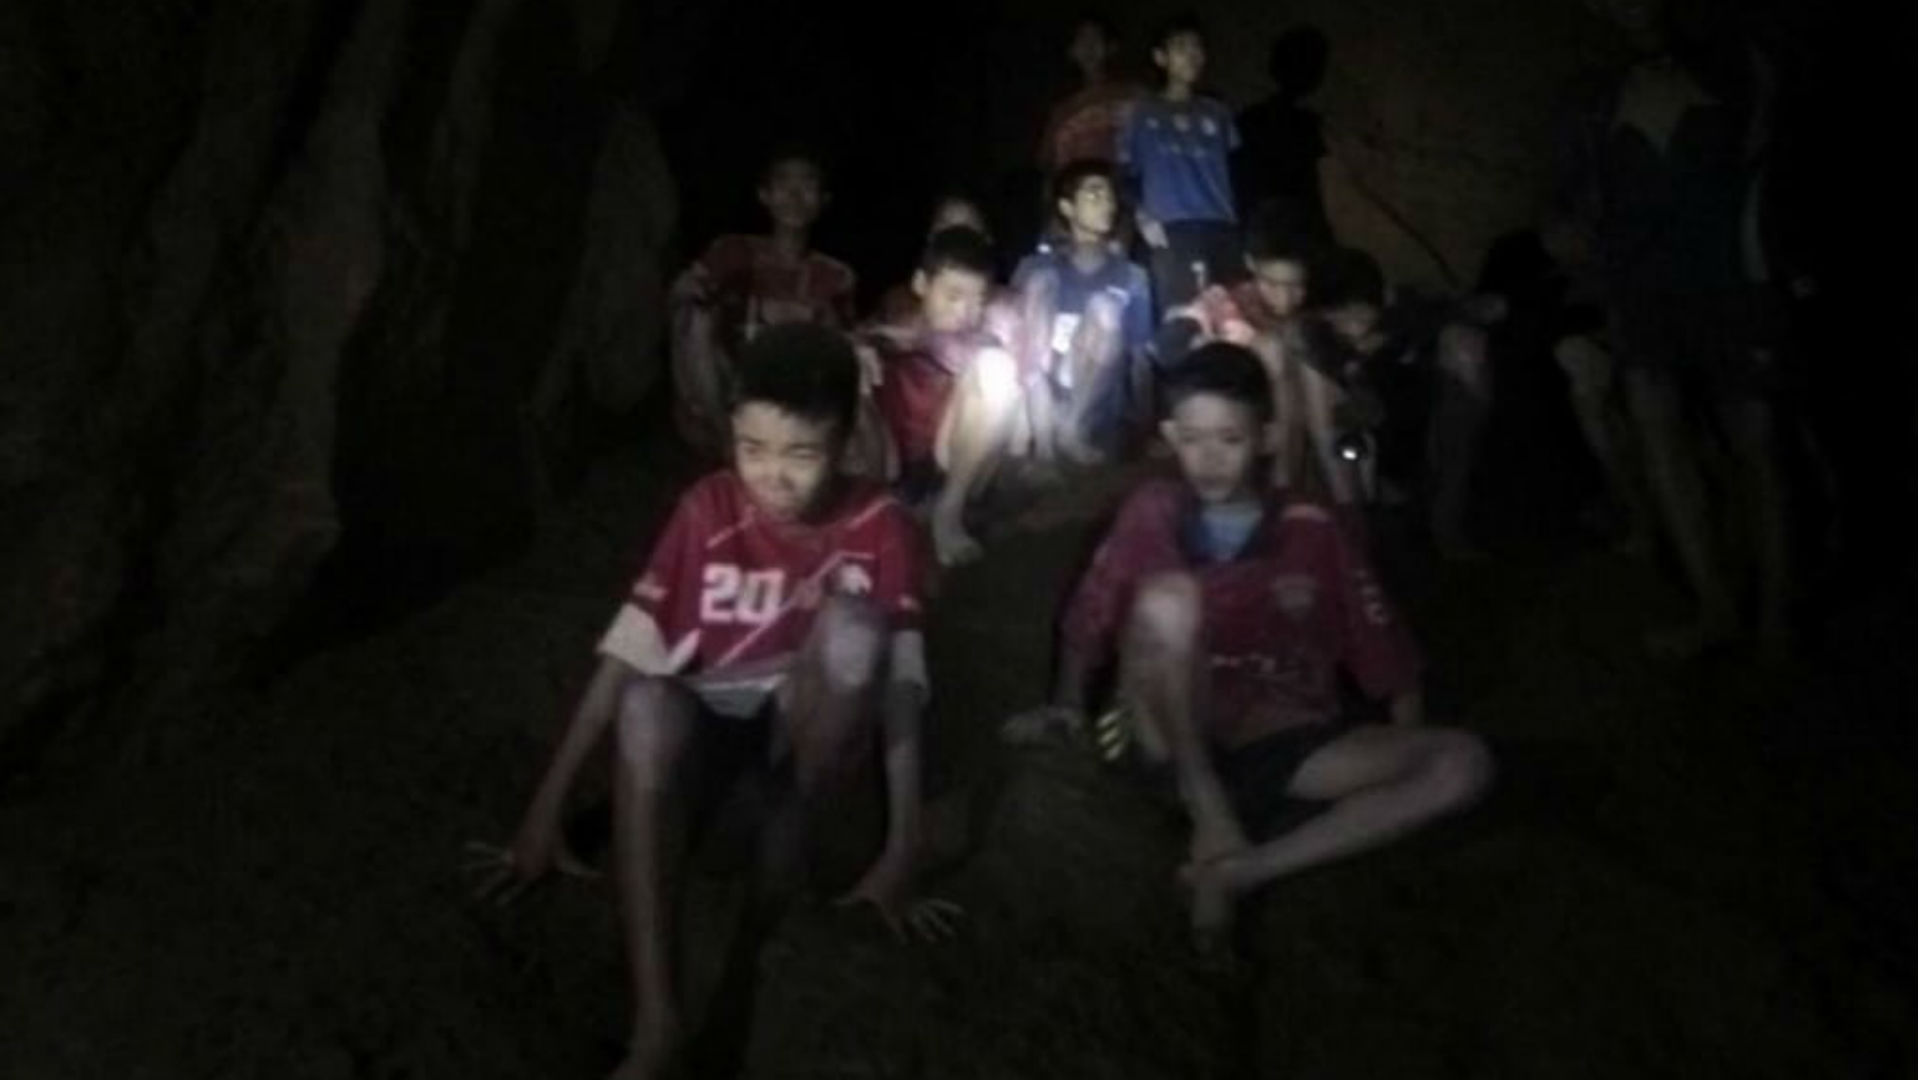 Los niños permanecieron atrapados durante 17 días en la oscuridad de la cueva. Su entrenador les enseñó técnicas budistas de respiración que los ayudaron a controlar el miedo y la angustia